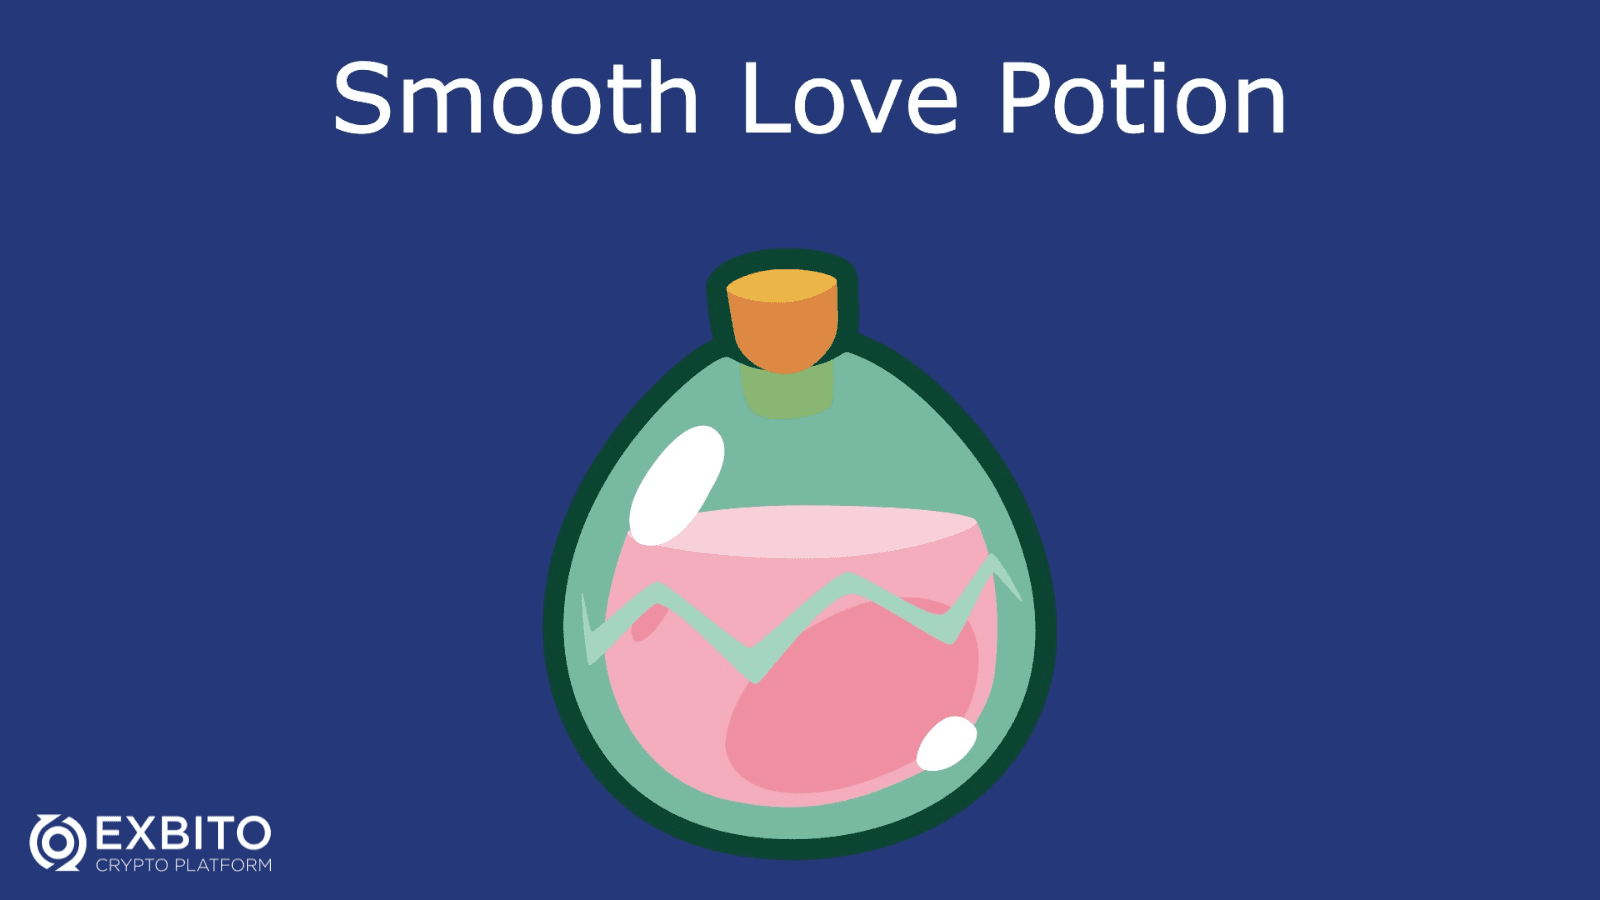 اسموث لاو پوشن (Smooth Love Potion) چیست؟